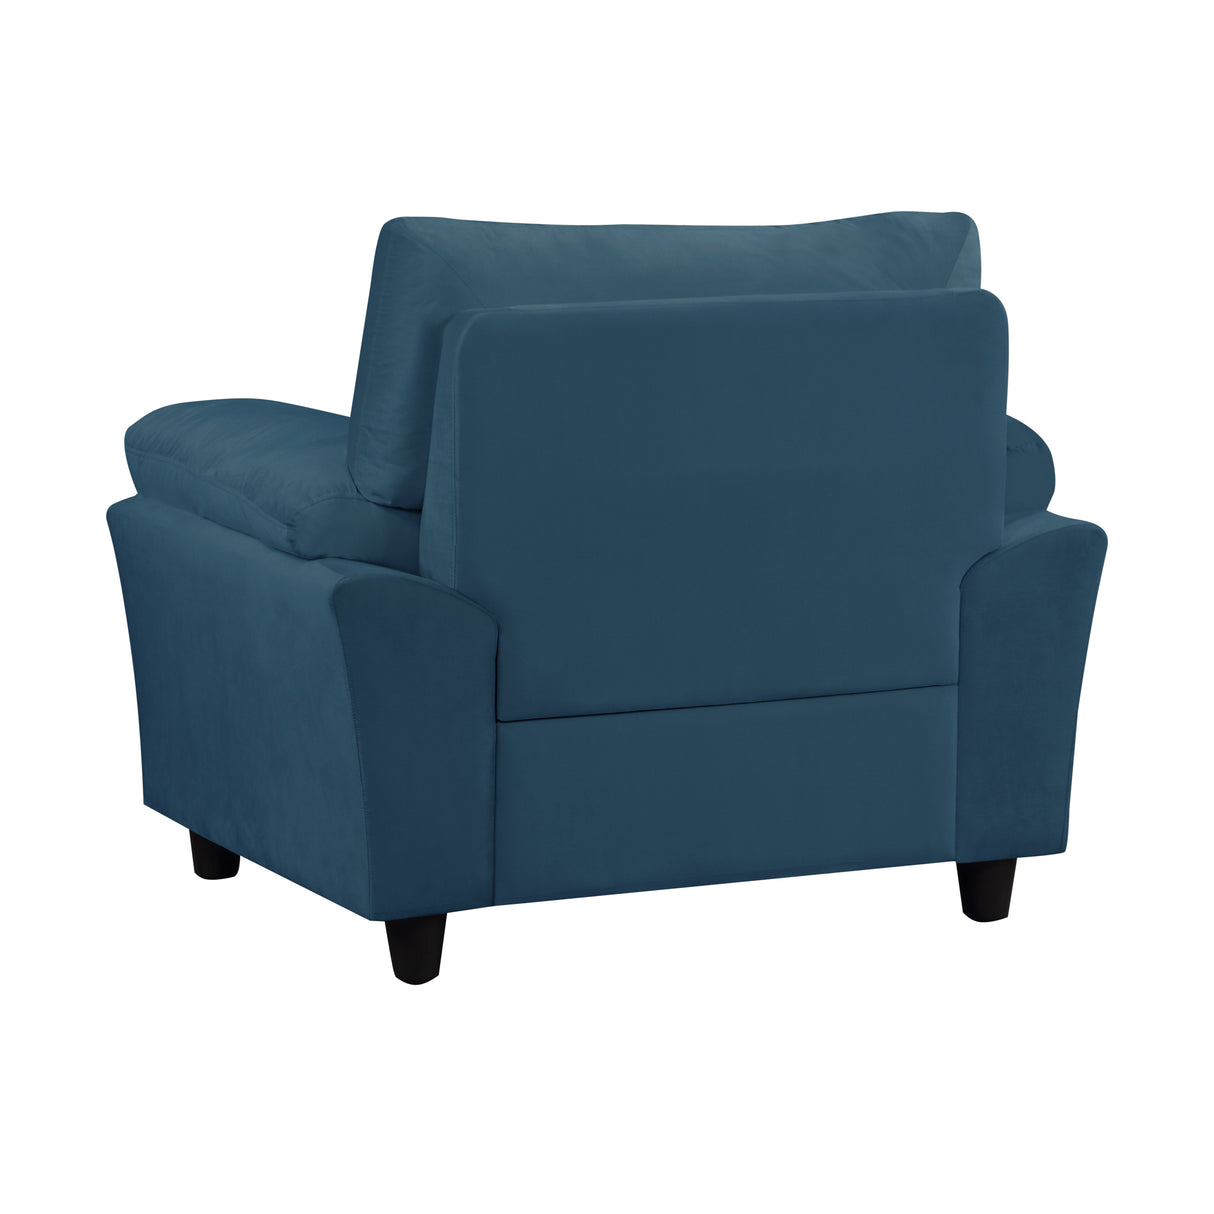 Single Seater sofa Velvet Super Cozy Upholstered Couch for Living Room, Bedroom, Office, Blue Home Elegance USA